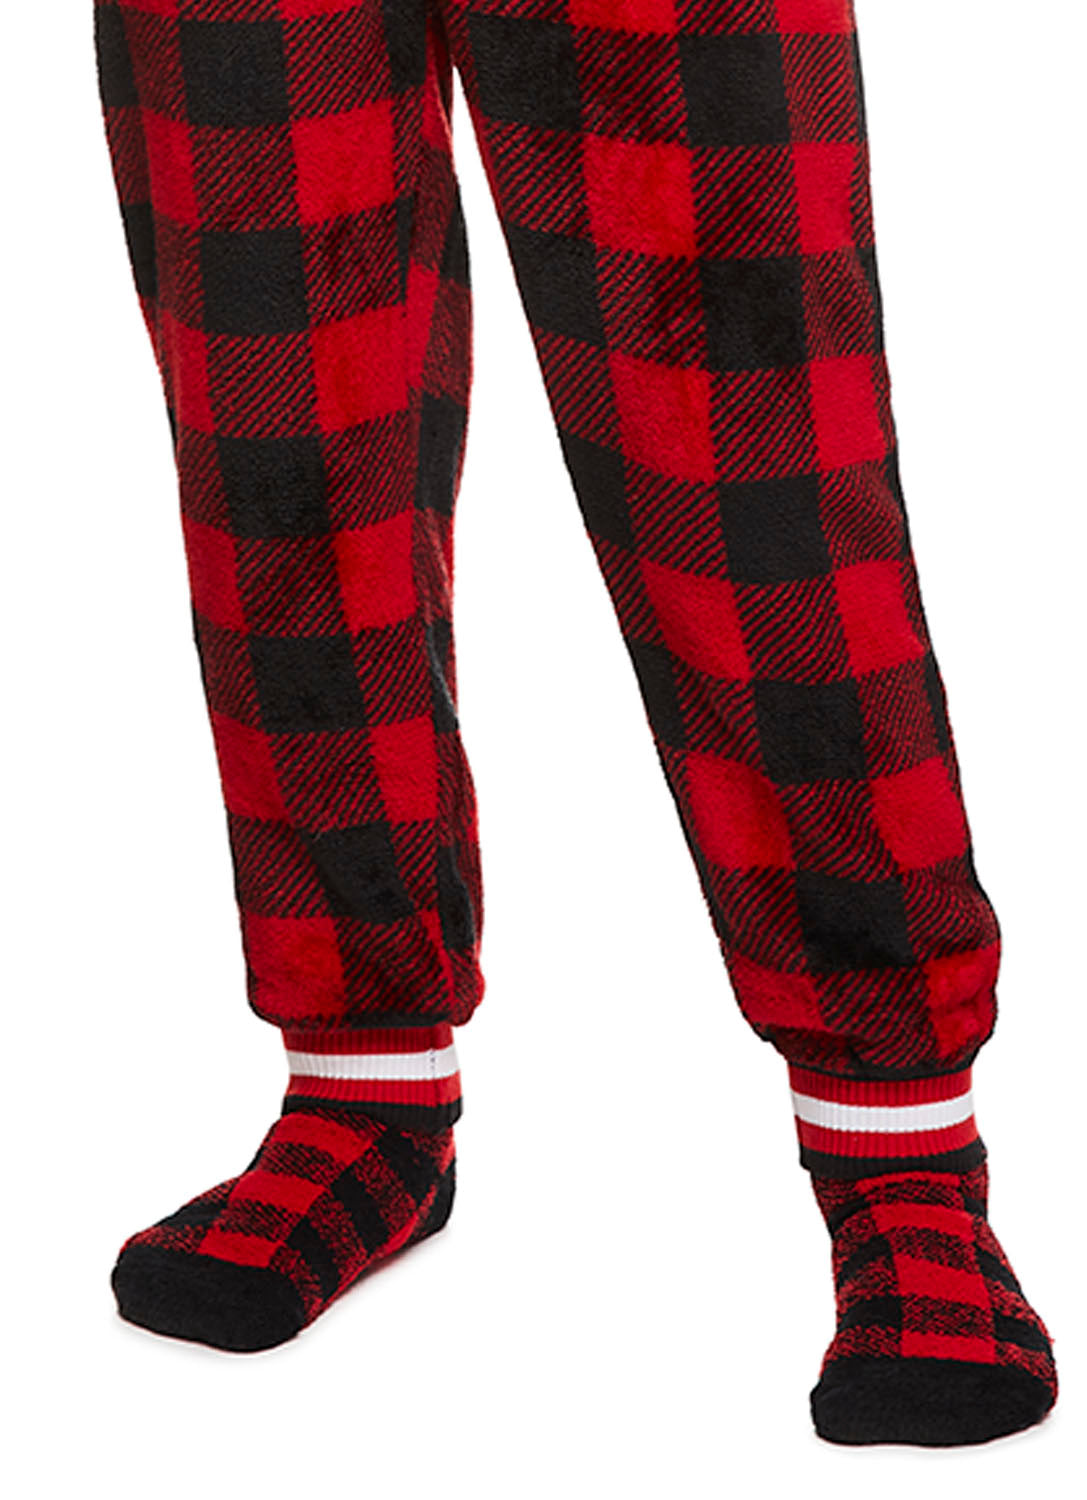 Unisex Kids Red Plaid Family Sleepwear Socks